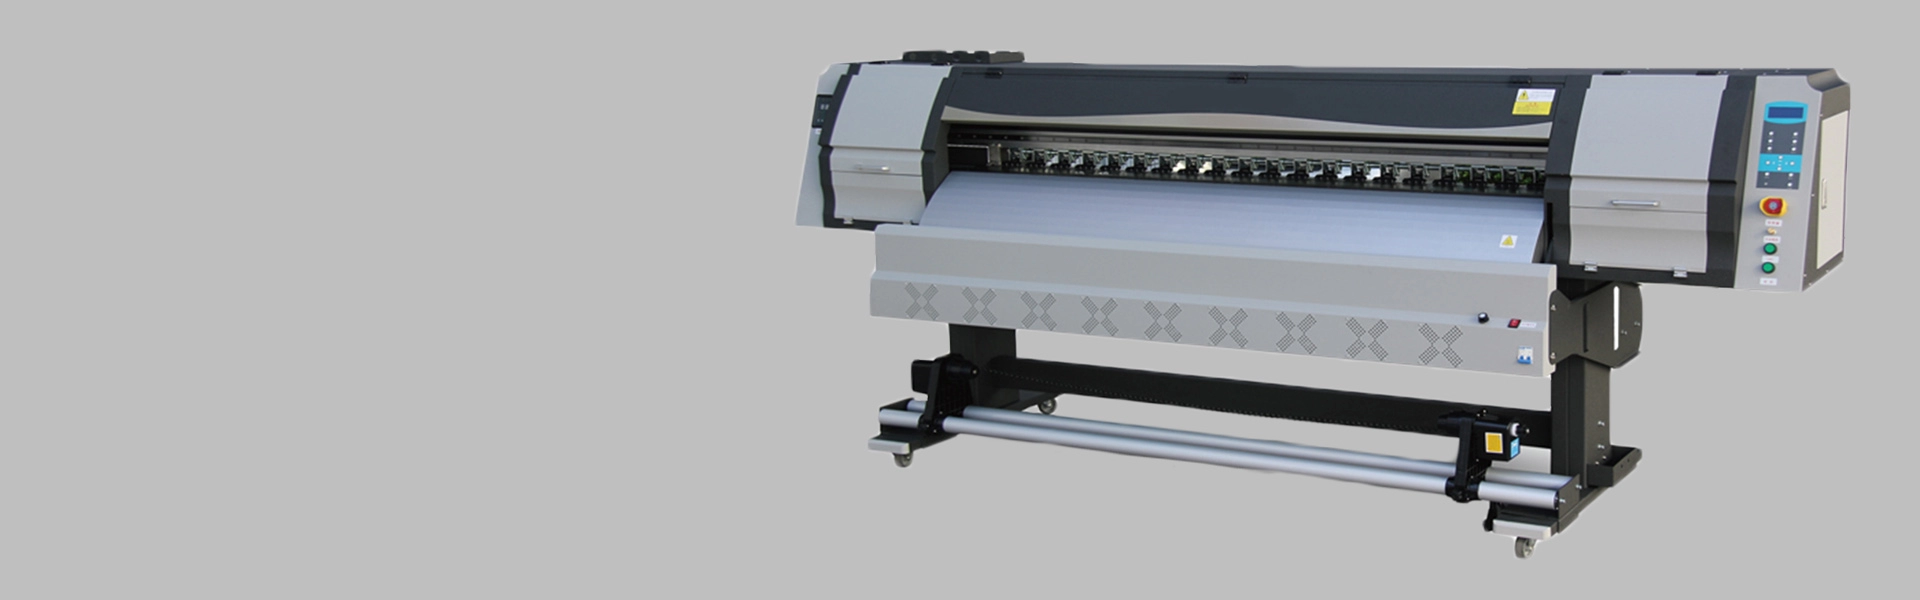 Imprimante éco-solvant DX5 EP180